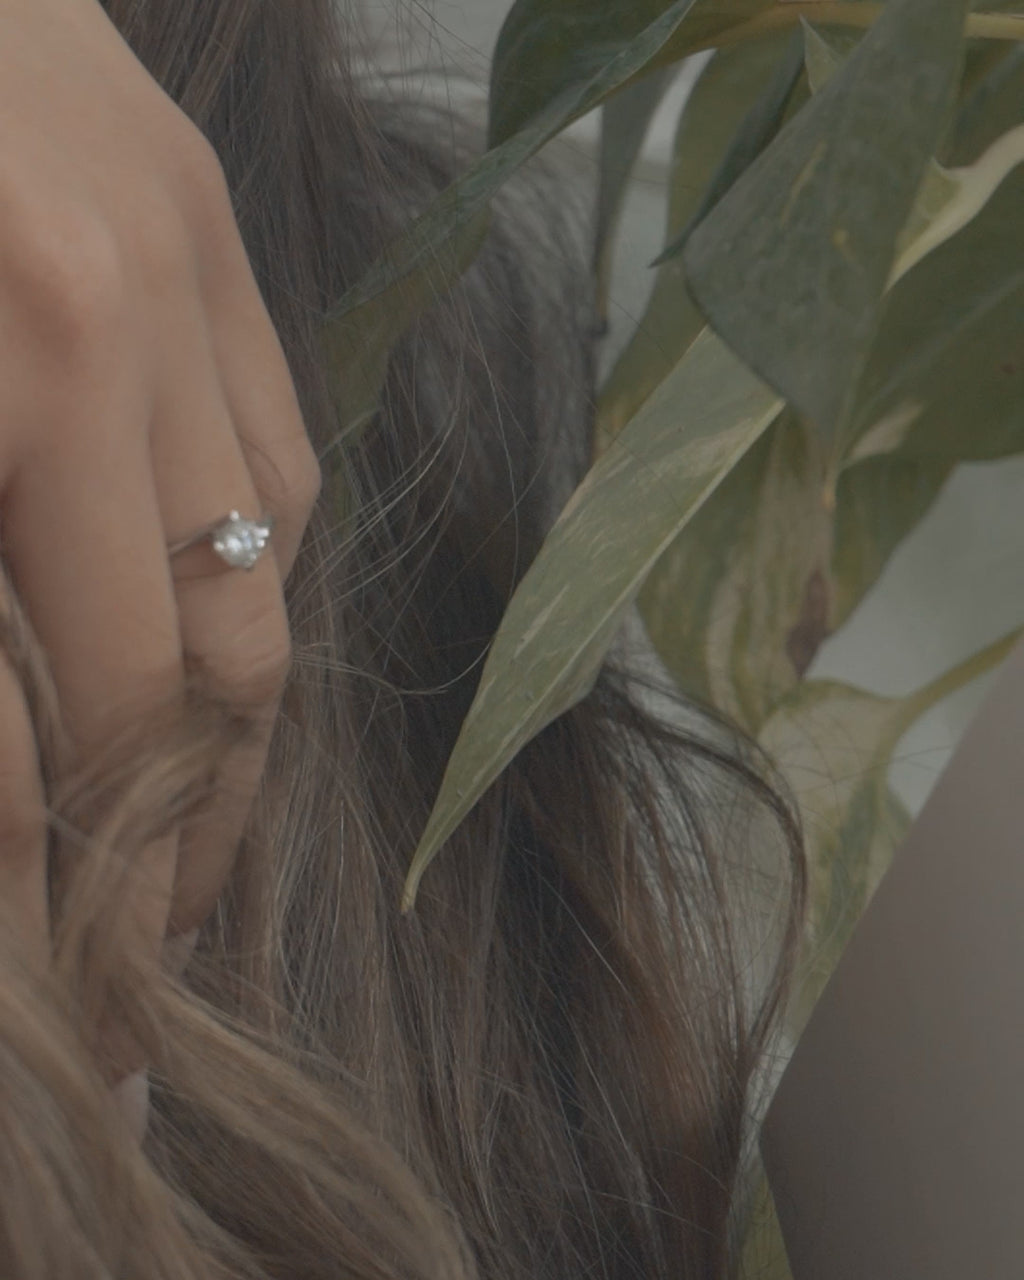 Λευκόχρυσο μονόπετρο δαχτυλίδι με διαμάντι και καστόνι σε σχήμα φλόγας, φορεμένο σε γυναικείο χέρι.